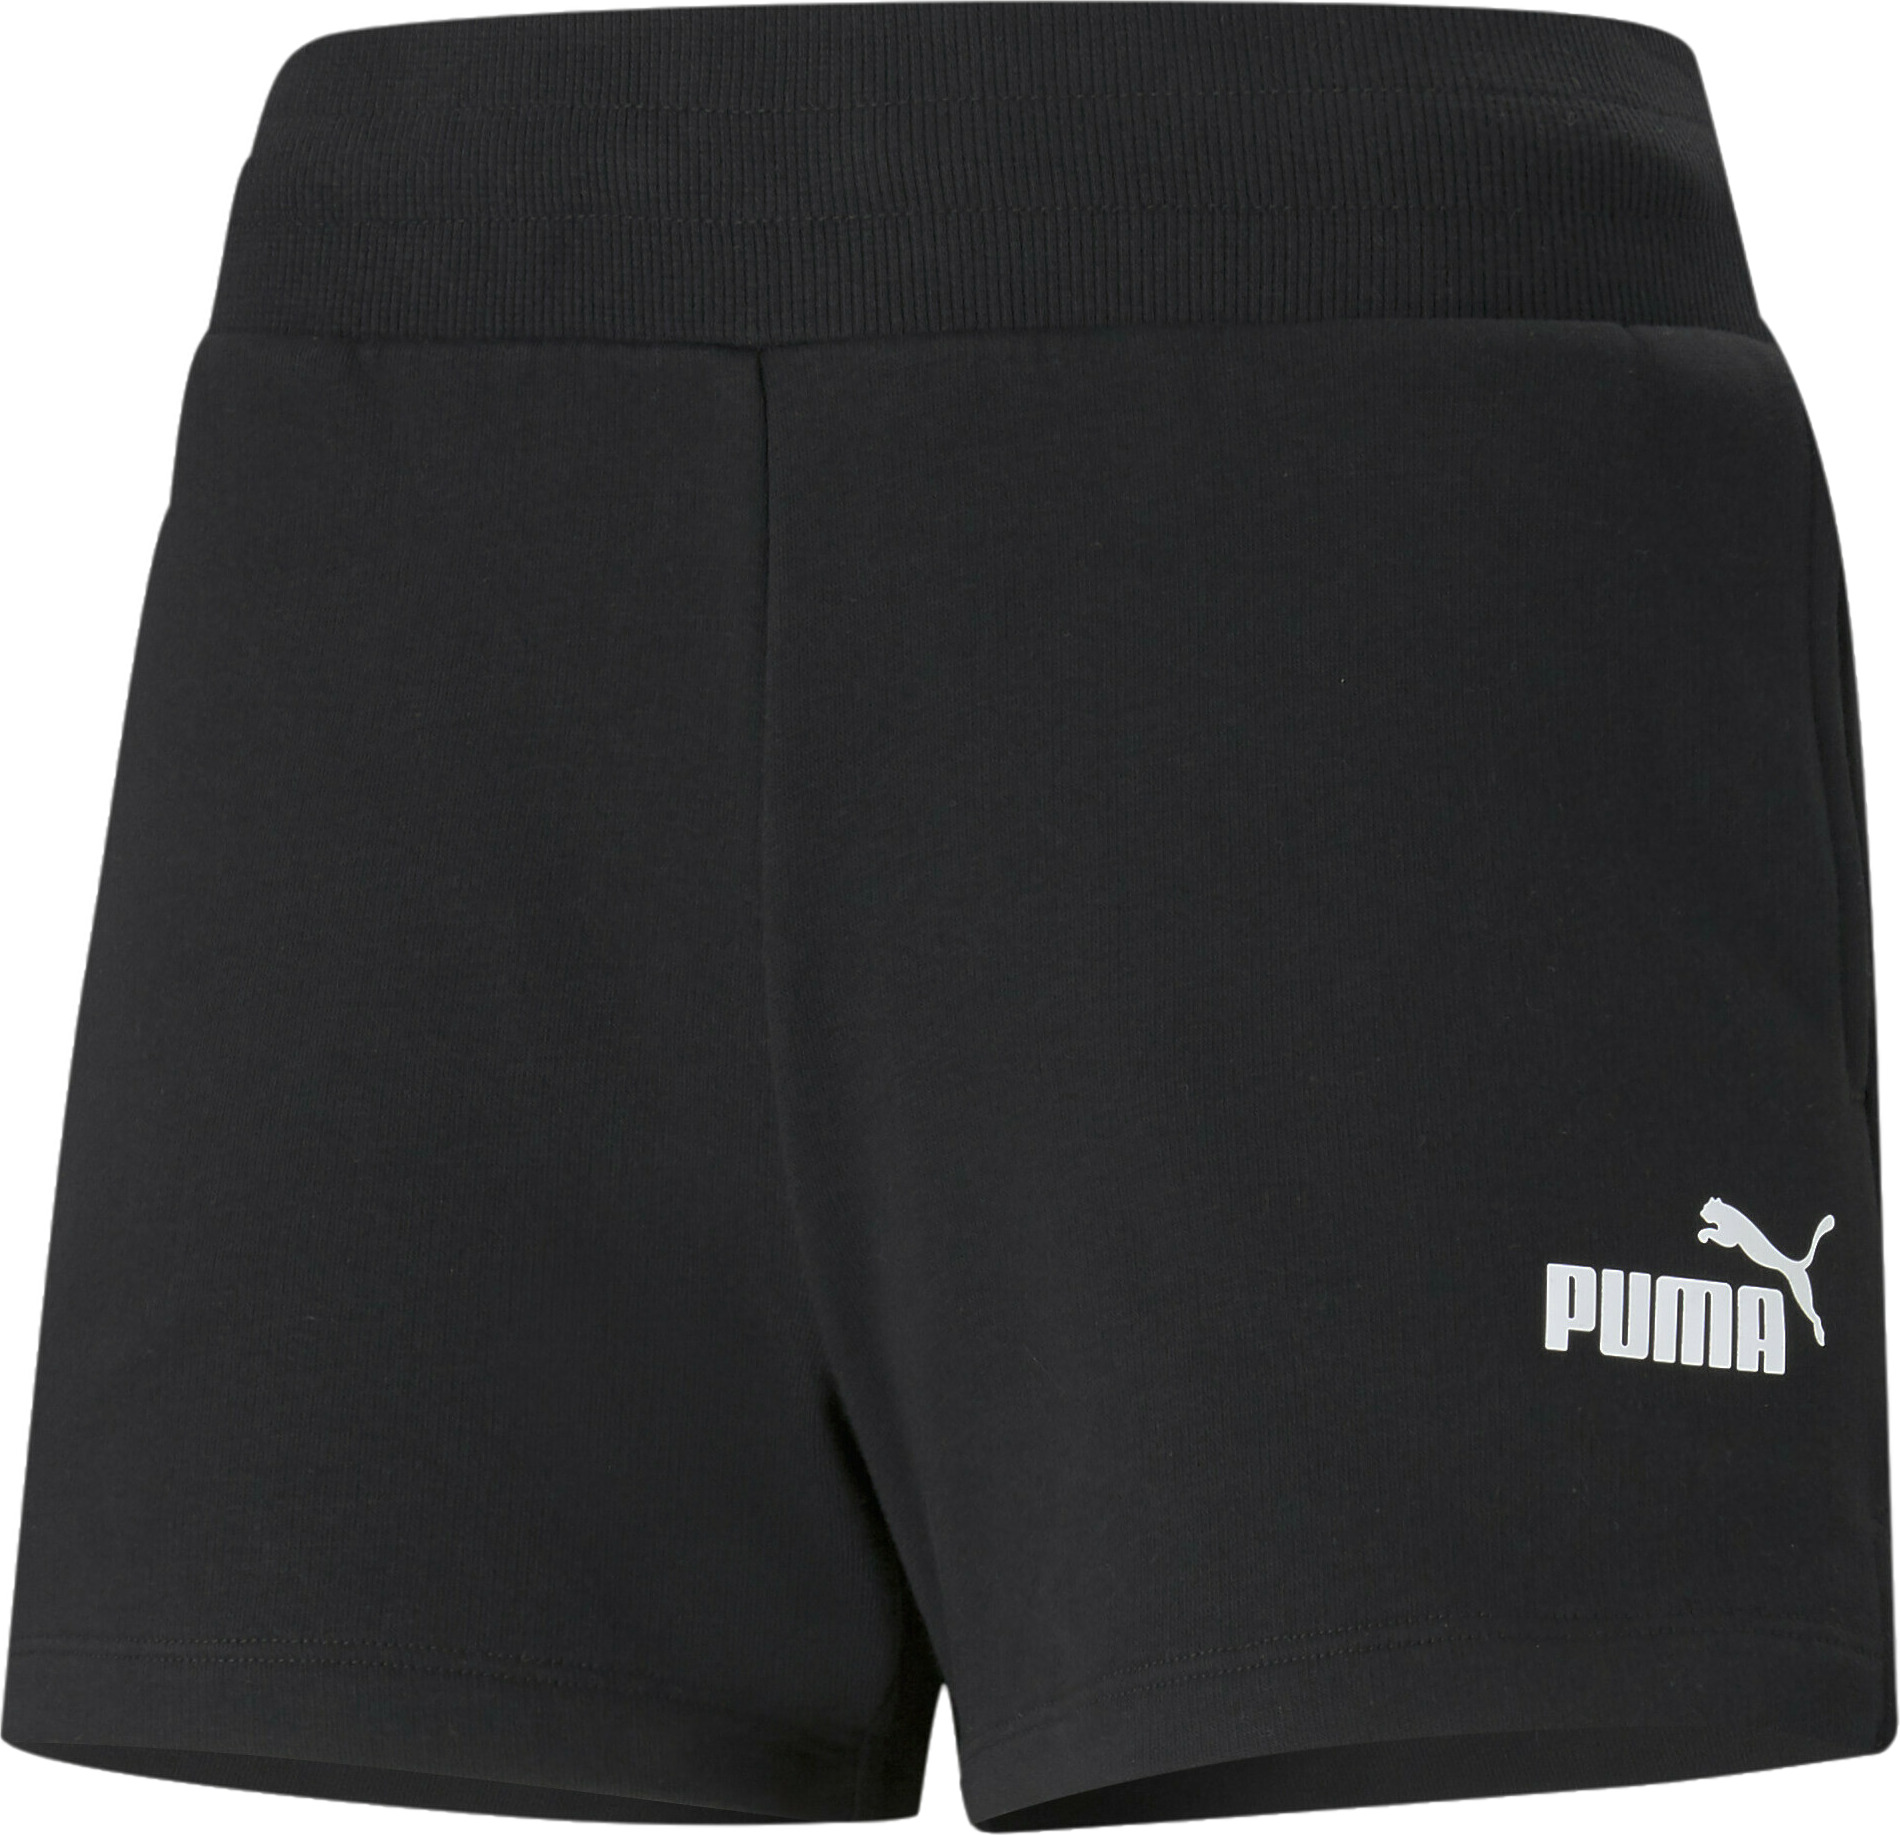 Cпортивные шорты женские PUMA 58682401 черные XL